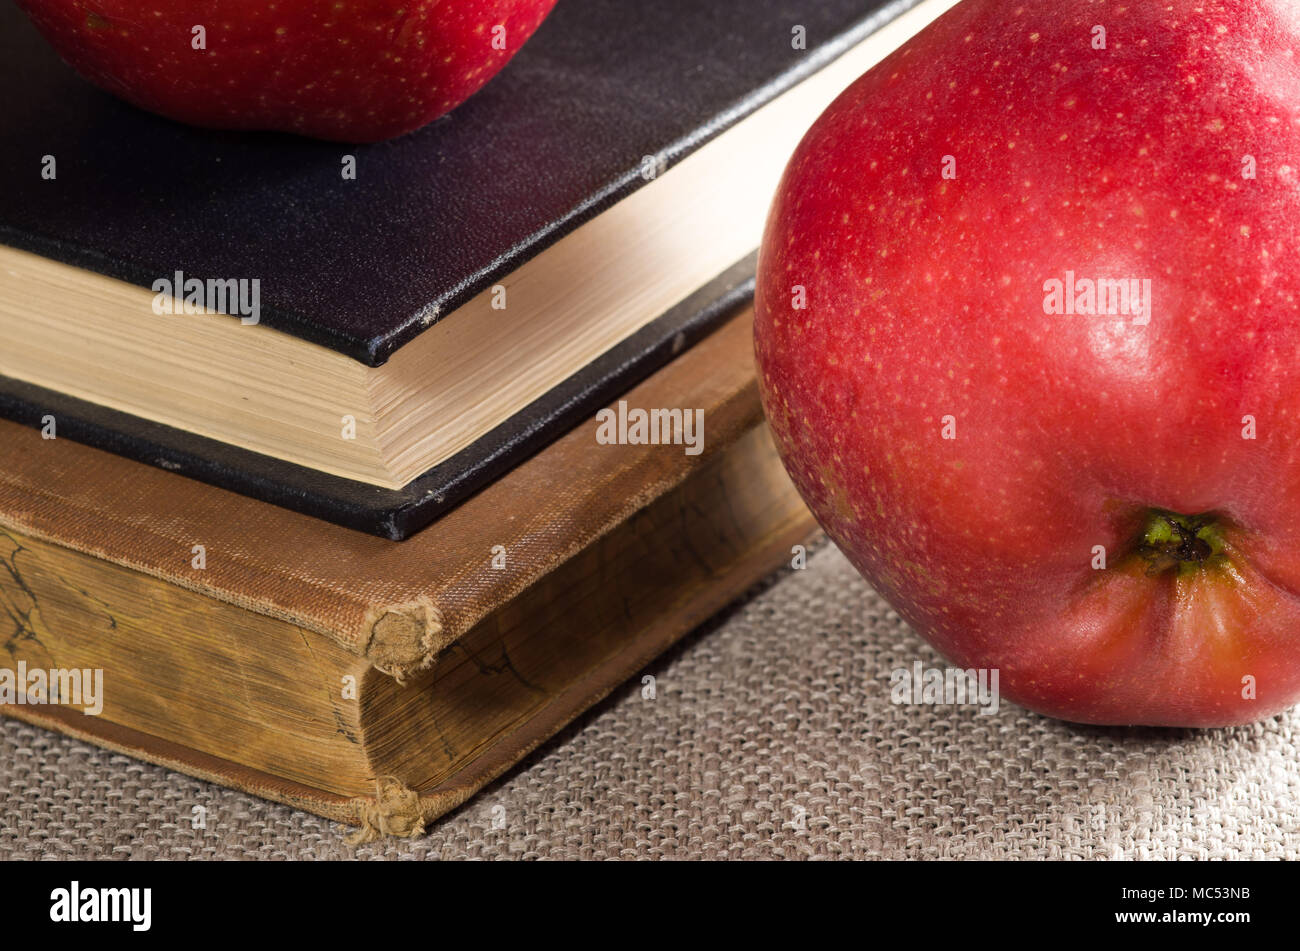 Der detaillierte Blick auf die rote Äpfel und alten Vintage Buch über graue Leinwand mit einer geringen Tiefenschärfe Stockfoto